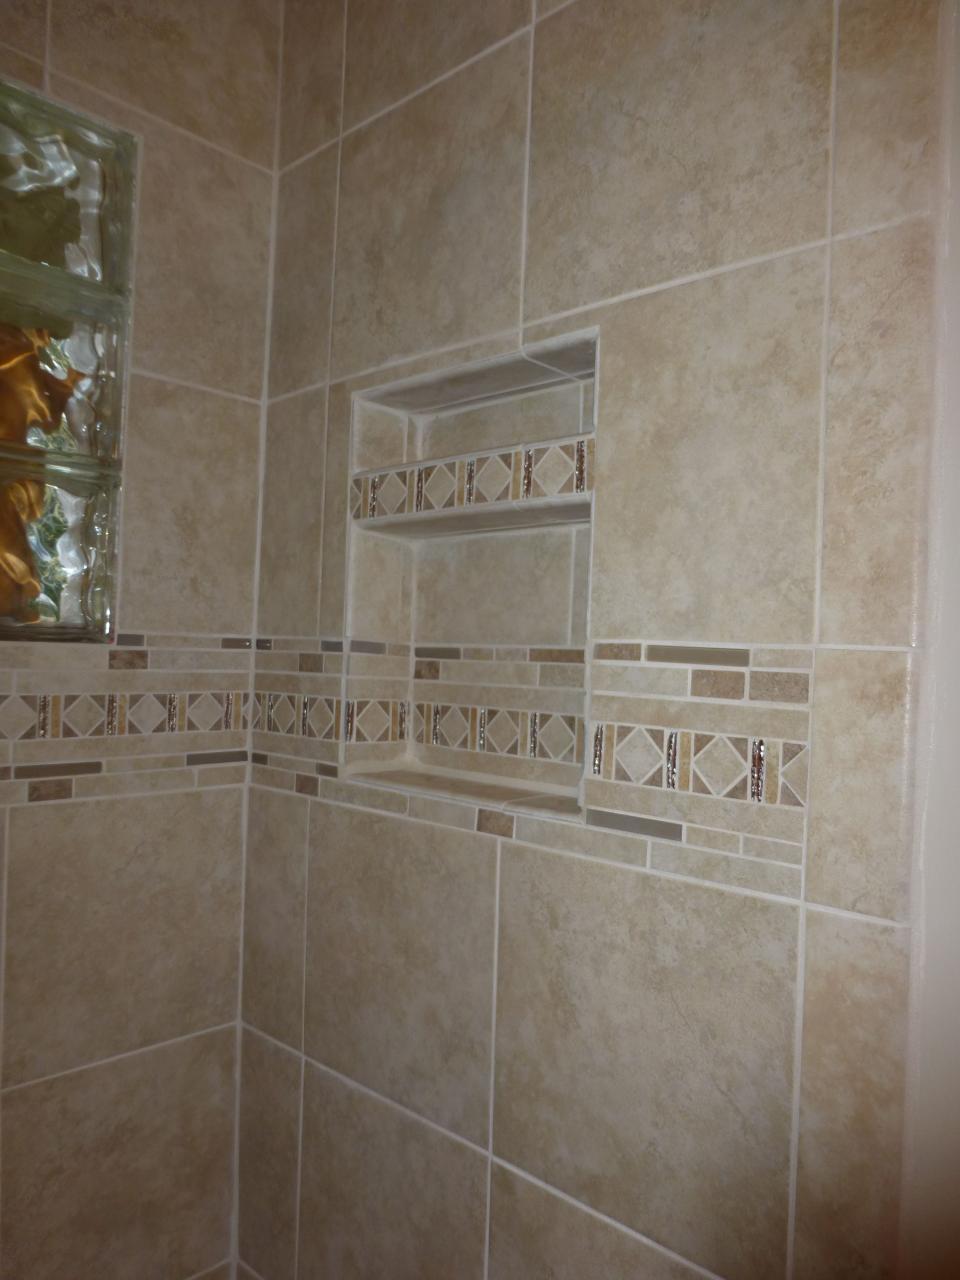 Lowes Floor Tile Bathroom kumottasora